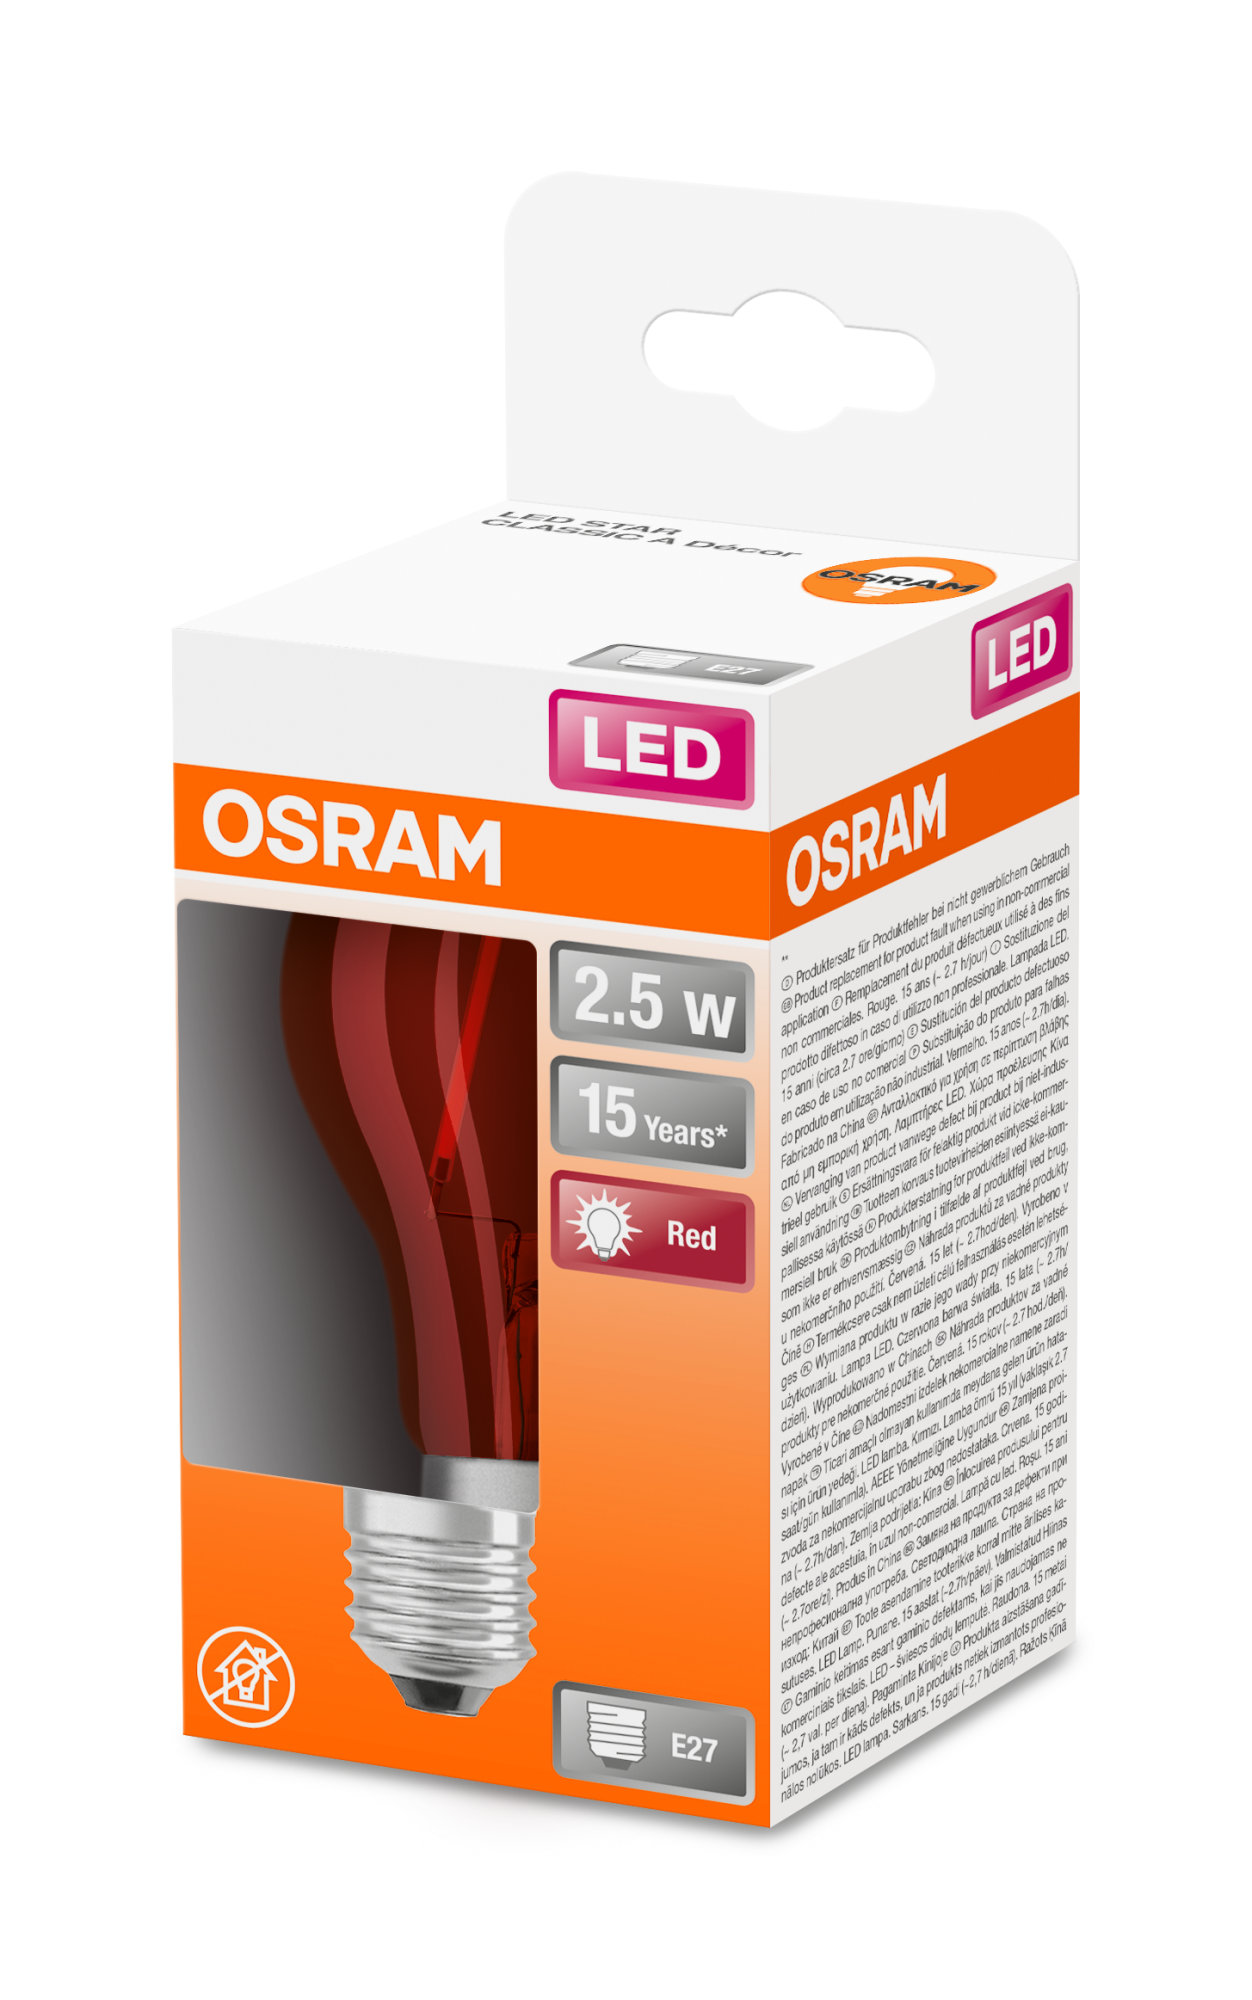 Bec Osram LED SUPERSTAR CLA 15 DécorRed non-dim 2,5W 827 E27 136lm 2700K